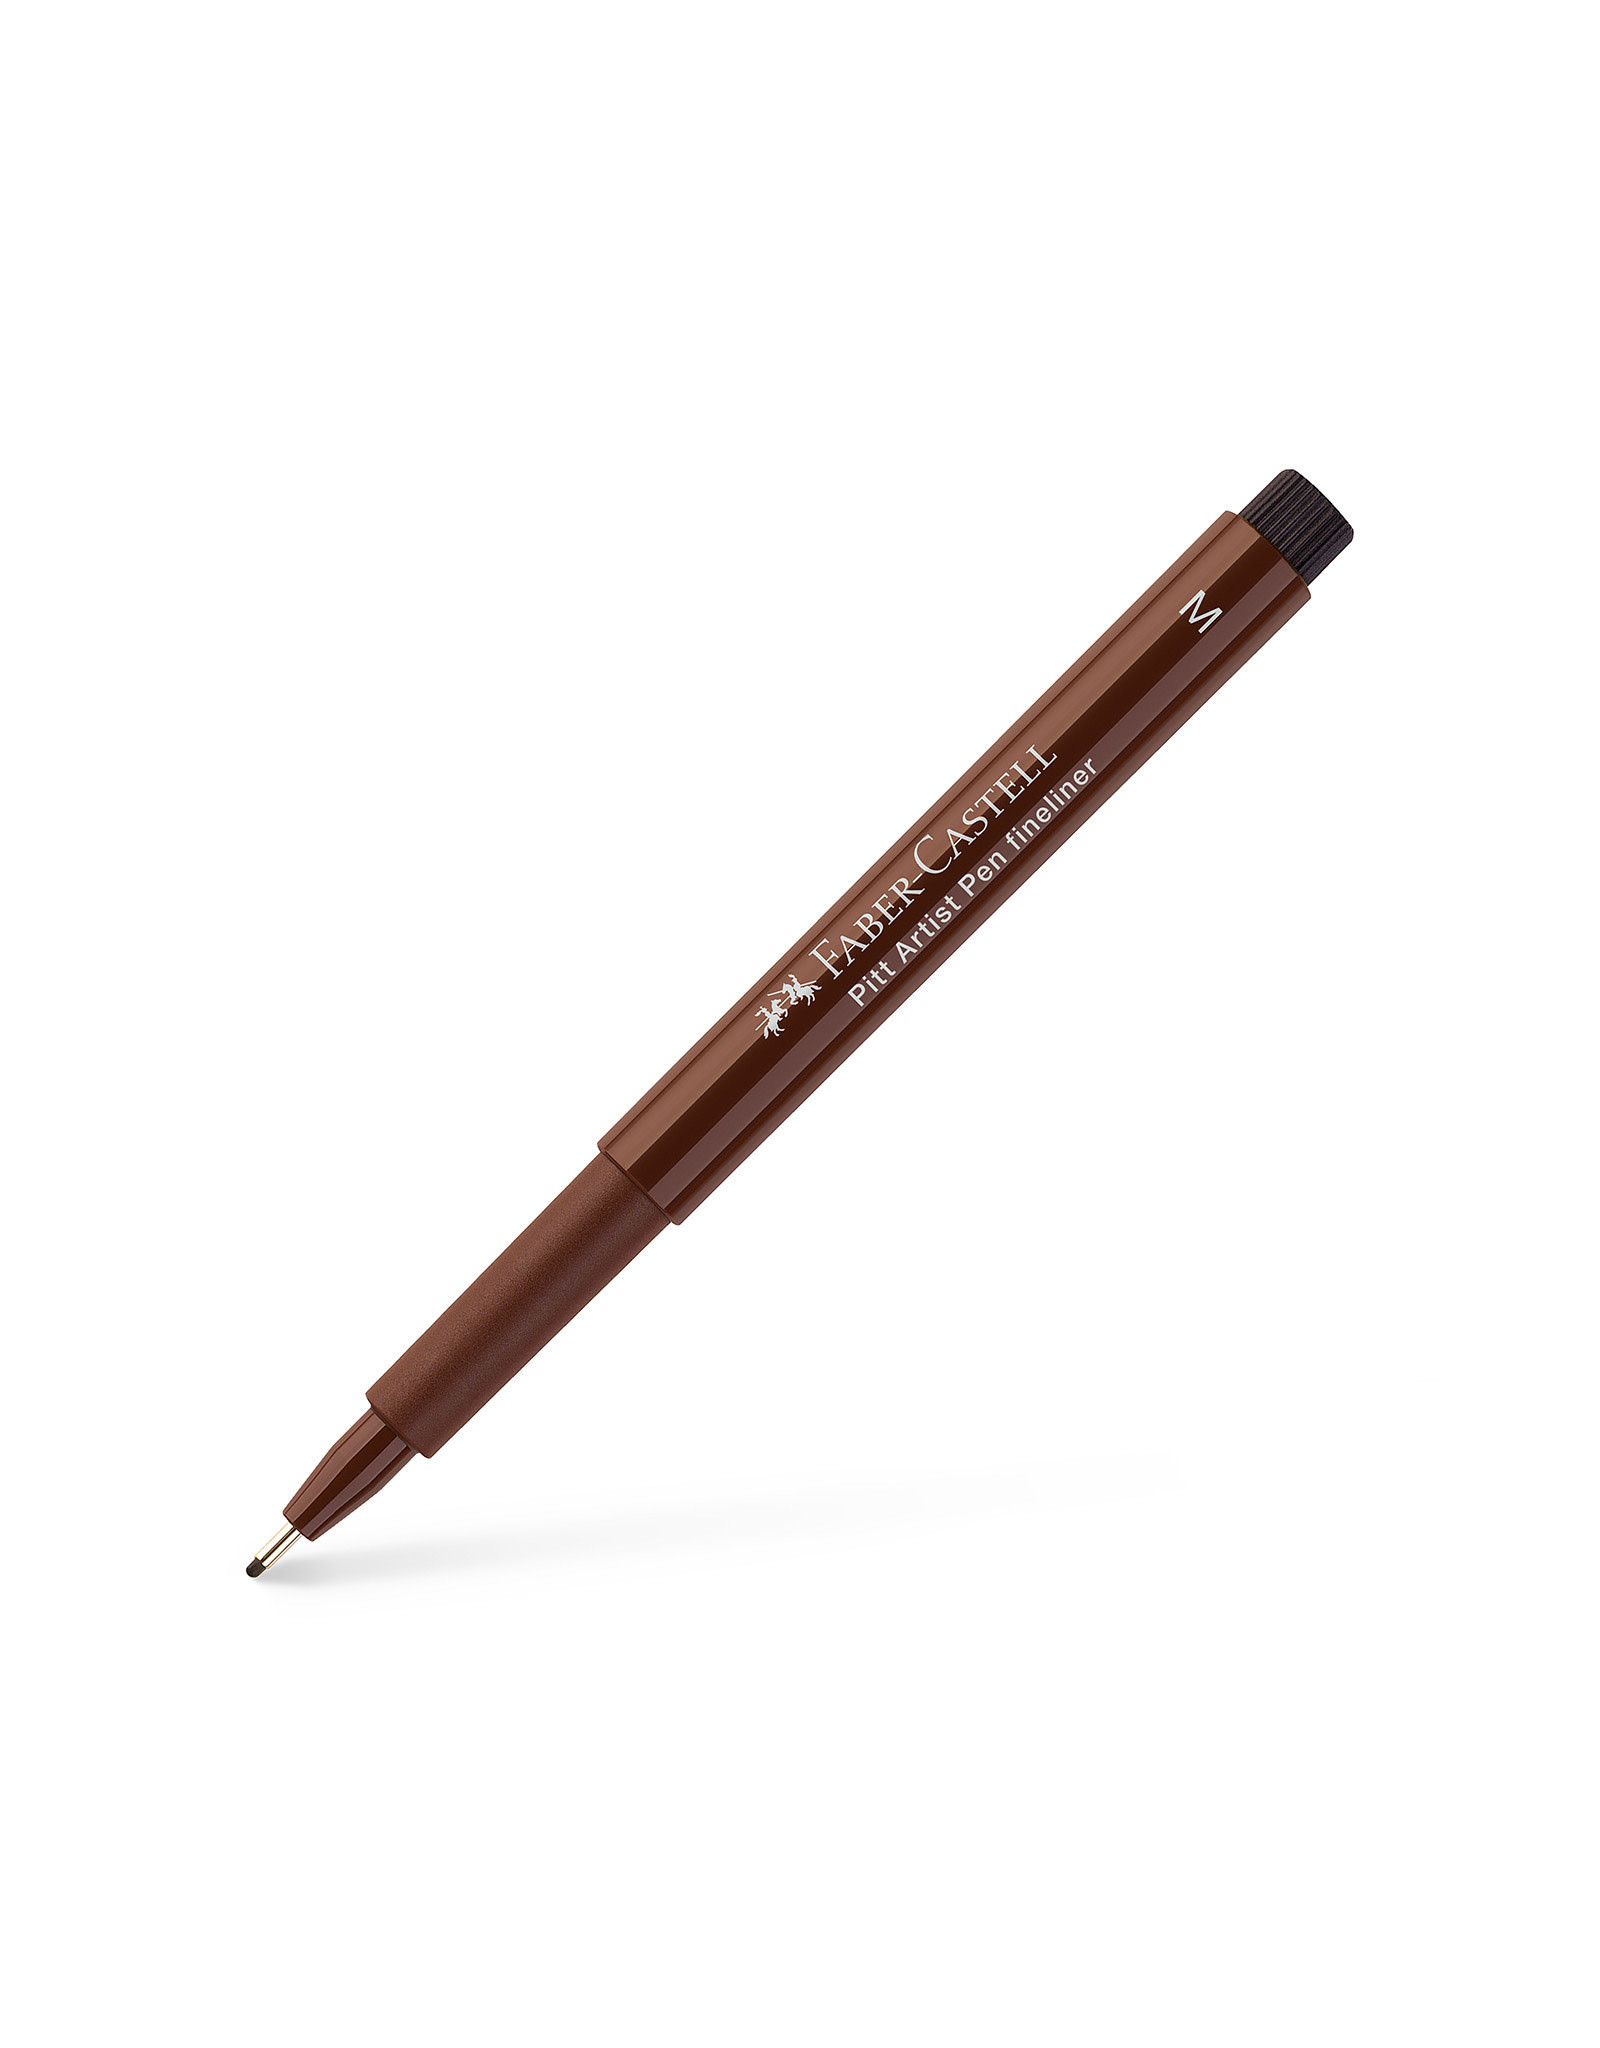 FABER-CASTELL Pitt Artist Pen, Medium, Sepia